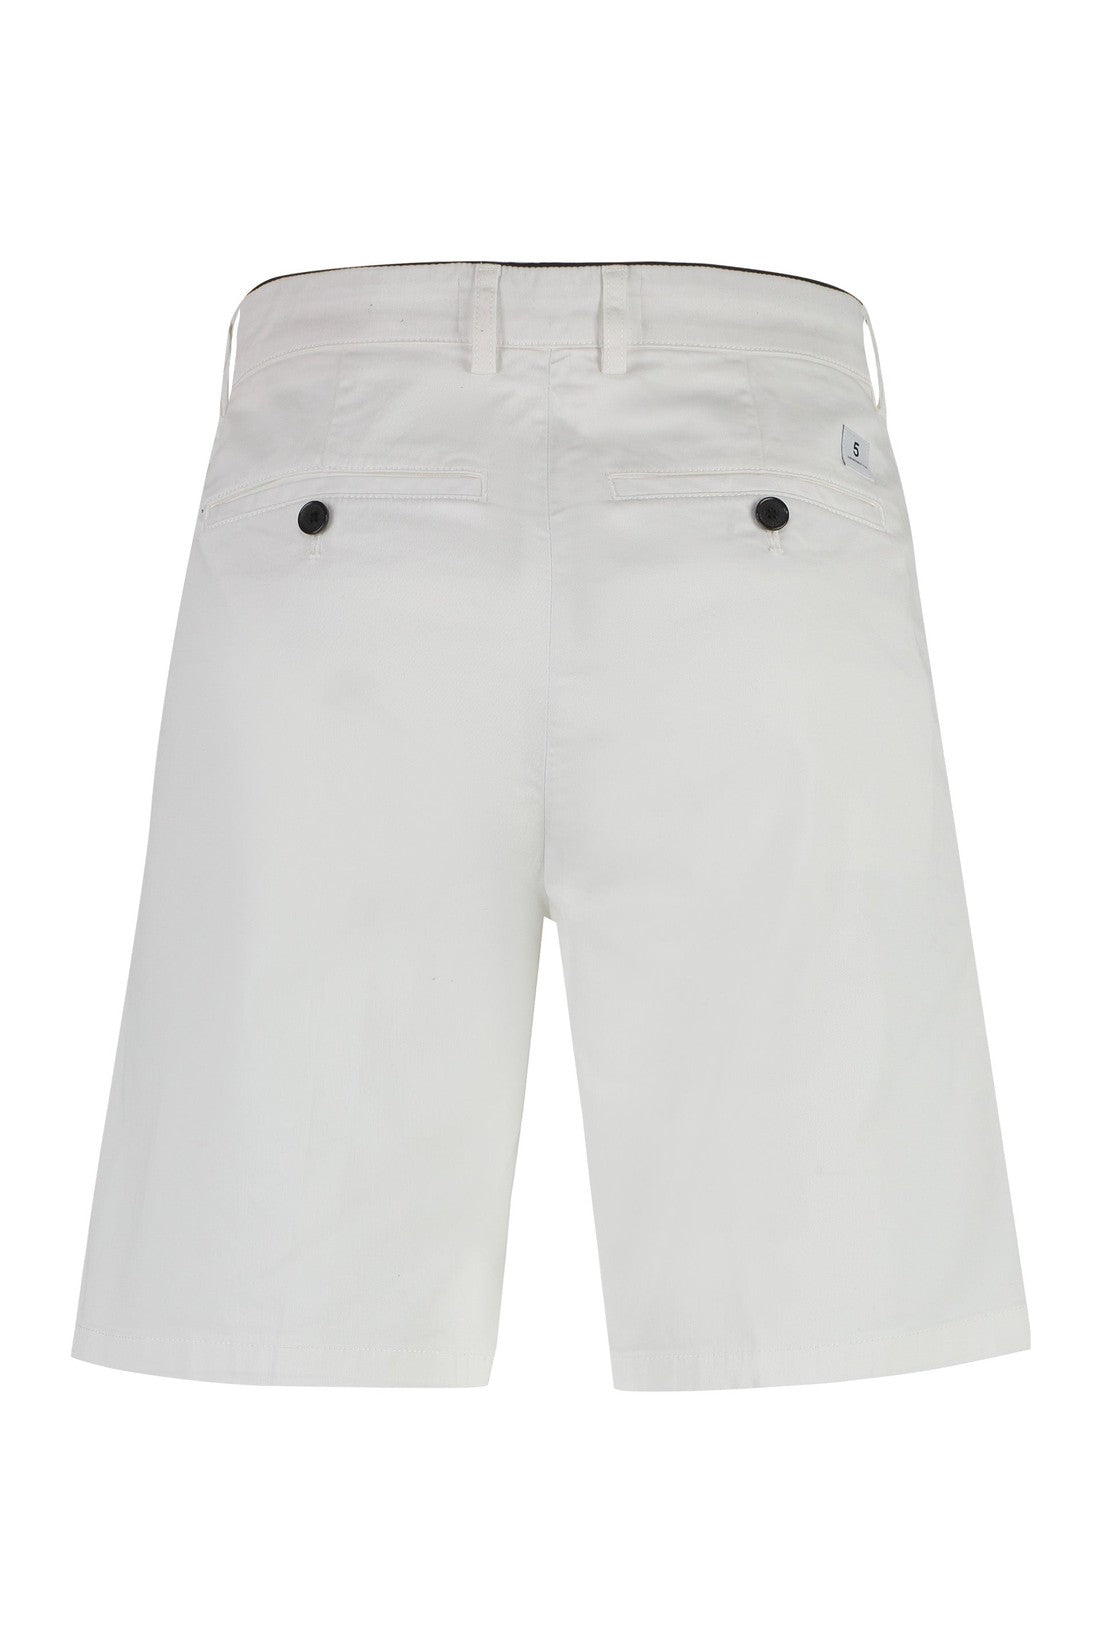 Piralo-OUTLET-SALE-Tim cotton bermuda shorts-ARCHIVIST